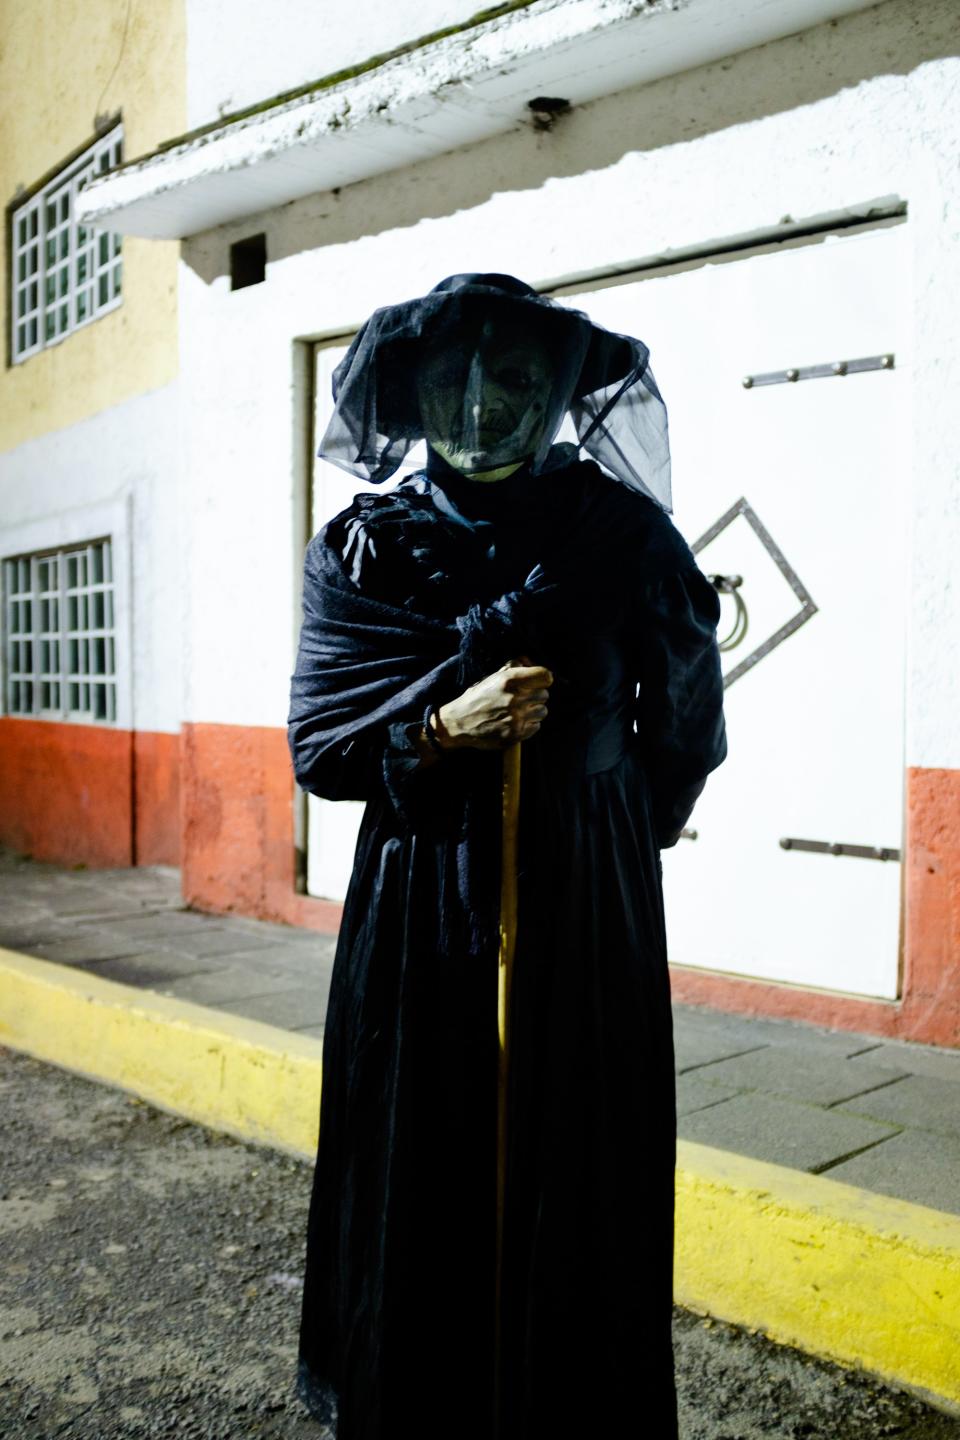 A costumed local in Xochimilco.